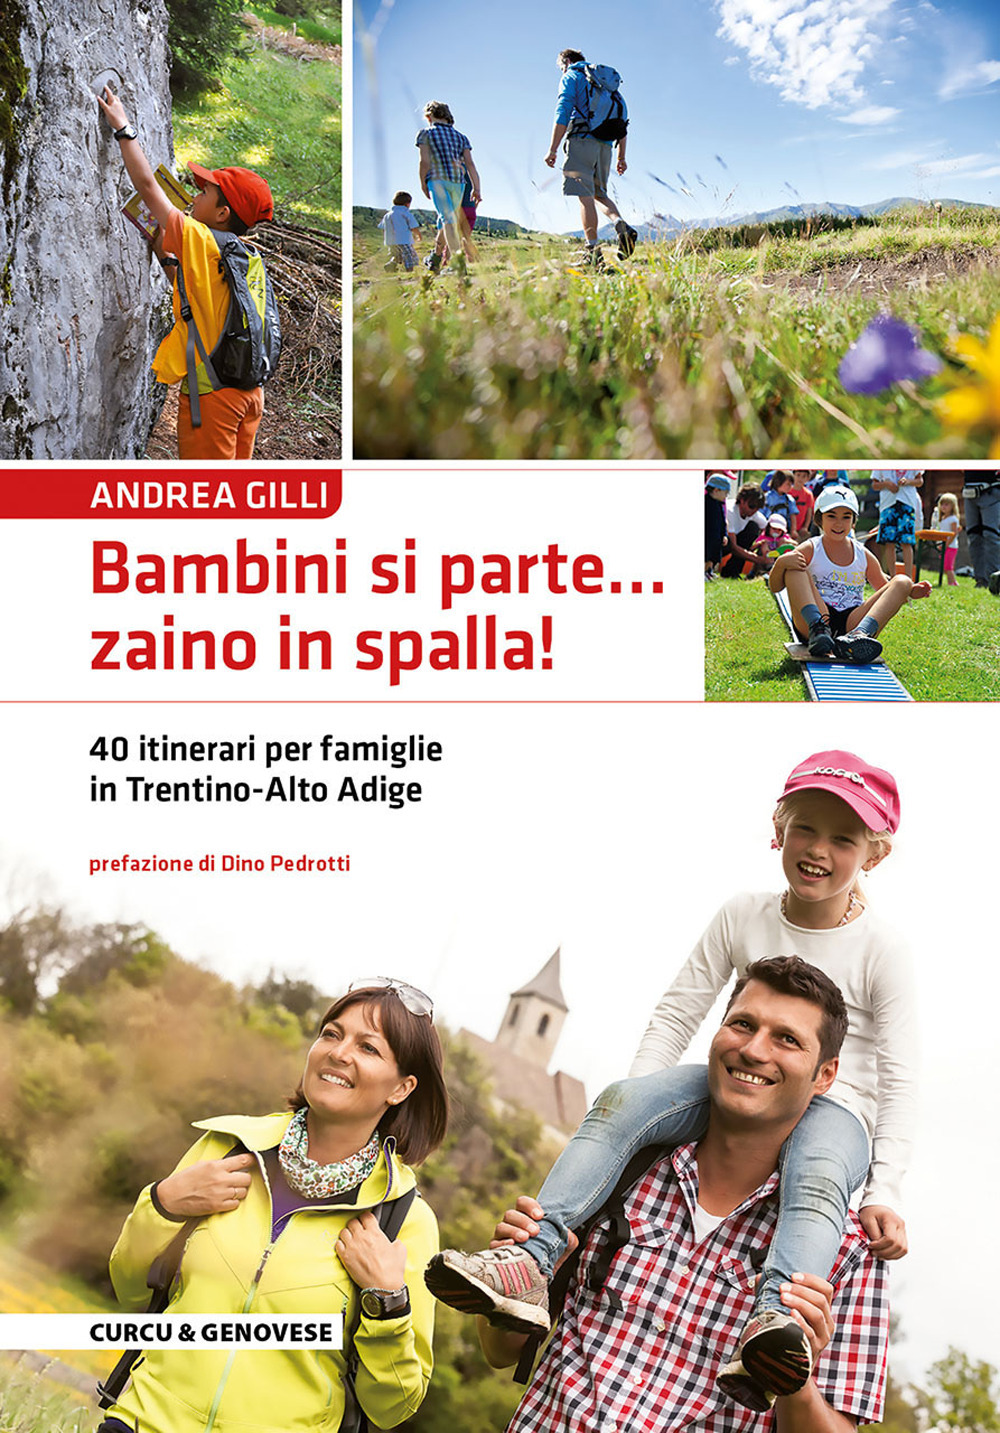 Bambini si parte... zaino in spalla! 40 itinerari per famiglie in Trentino-Alto Adige